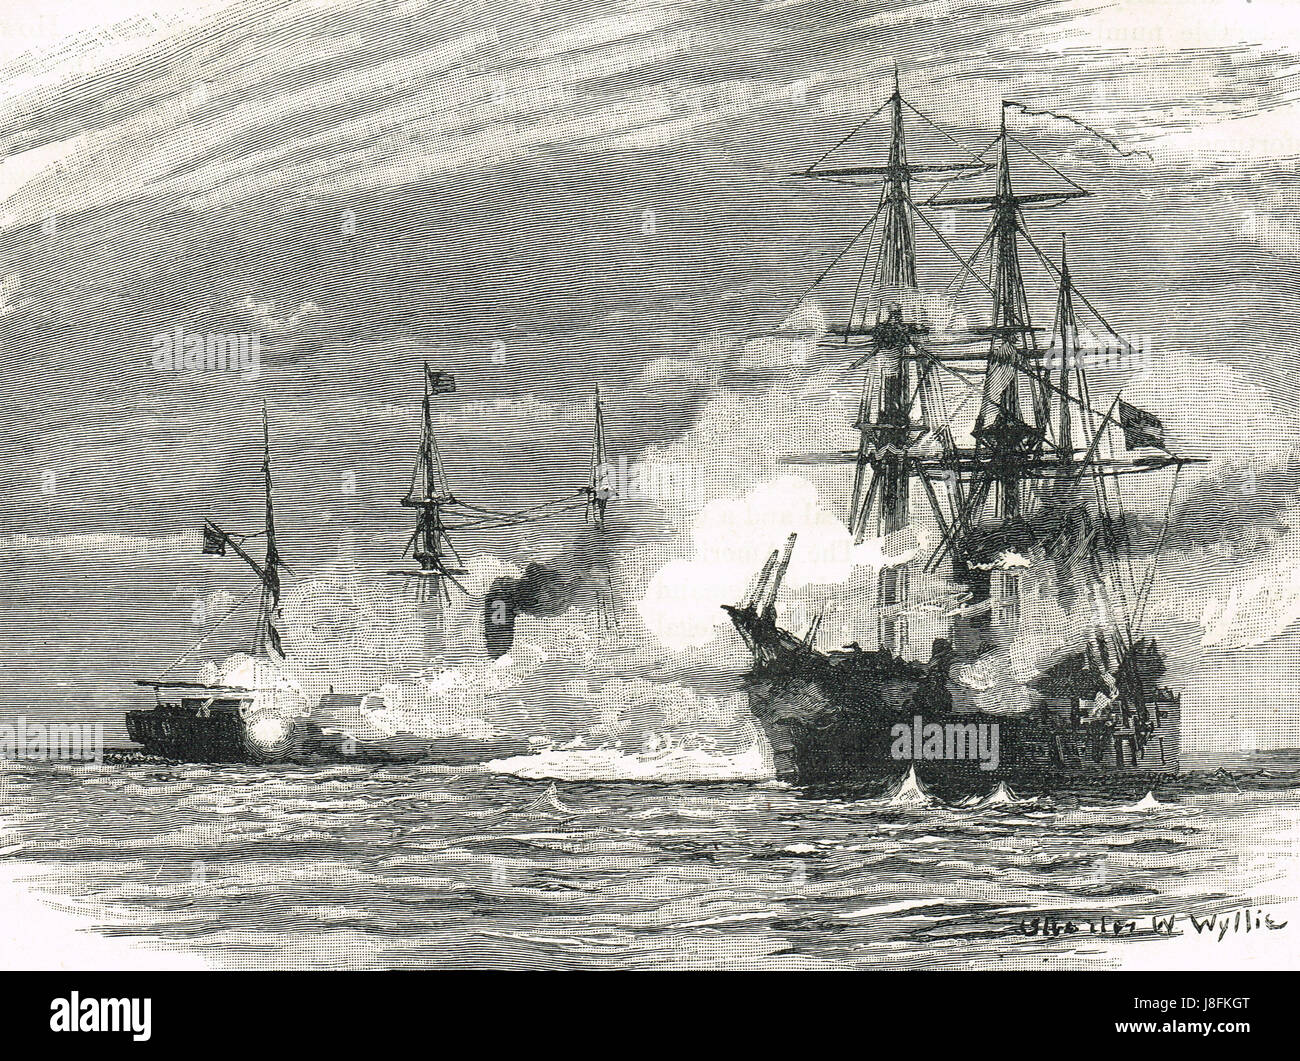 Il naufragio di Stati confederati Navy navi da guerra, CSS Alabama dalla Marina degli Stati Uniti nave da guerra USS Kearsarge, al largo della costa di Cherbourg, Francia, giugno 19, 1864. Foto Stock